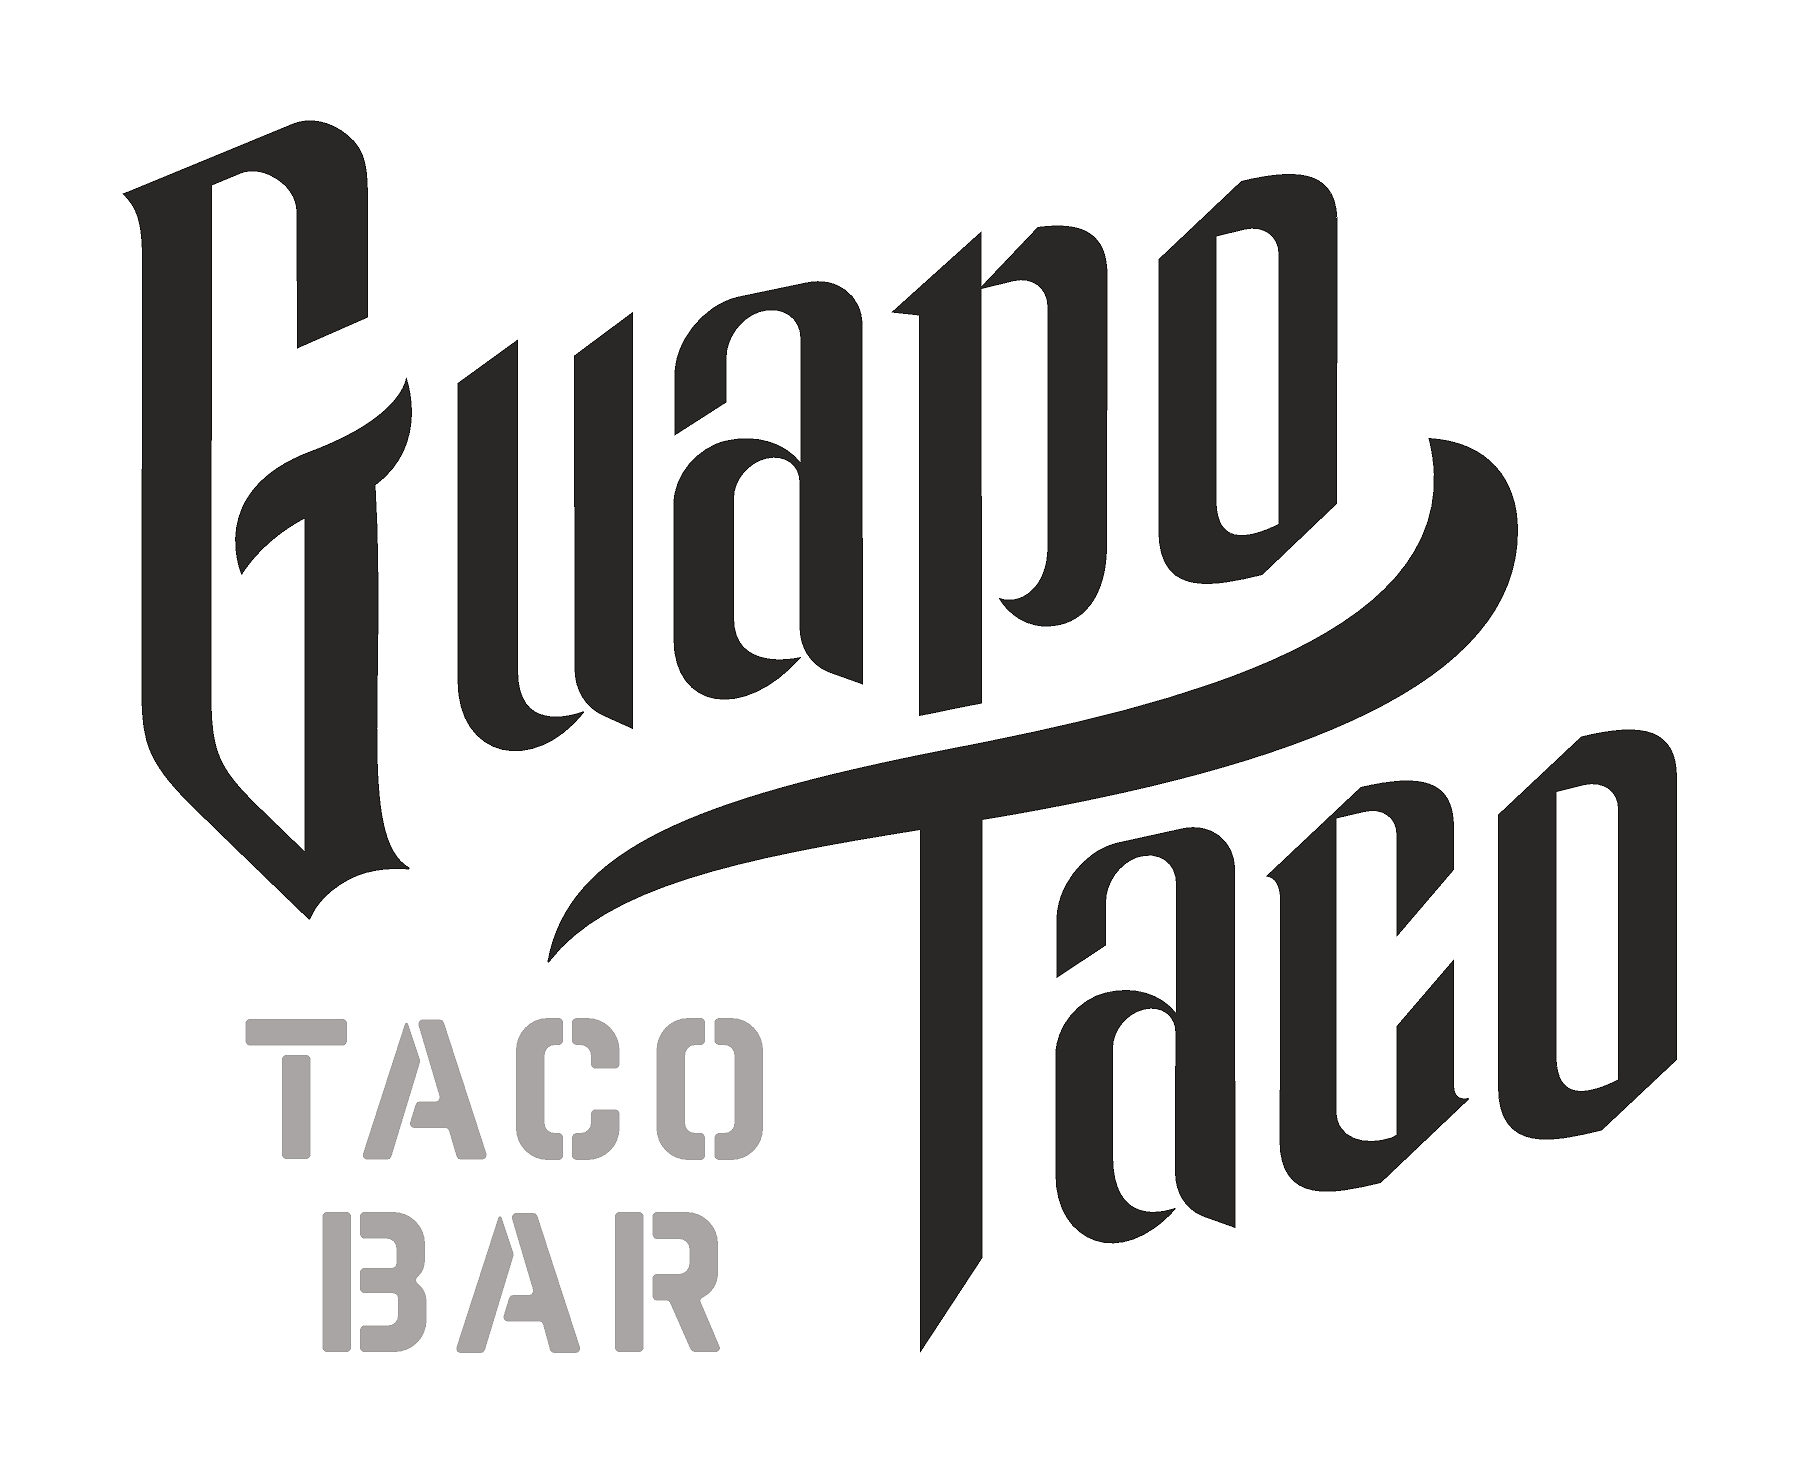 Guapo Taco